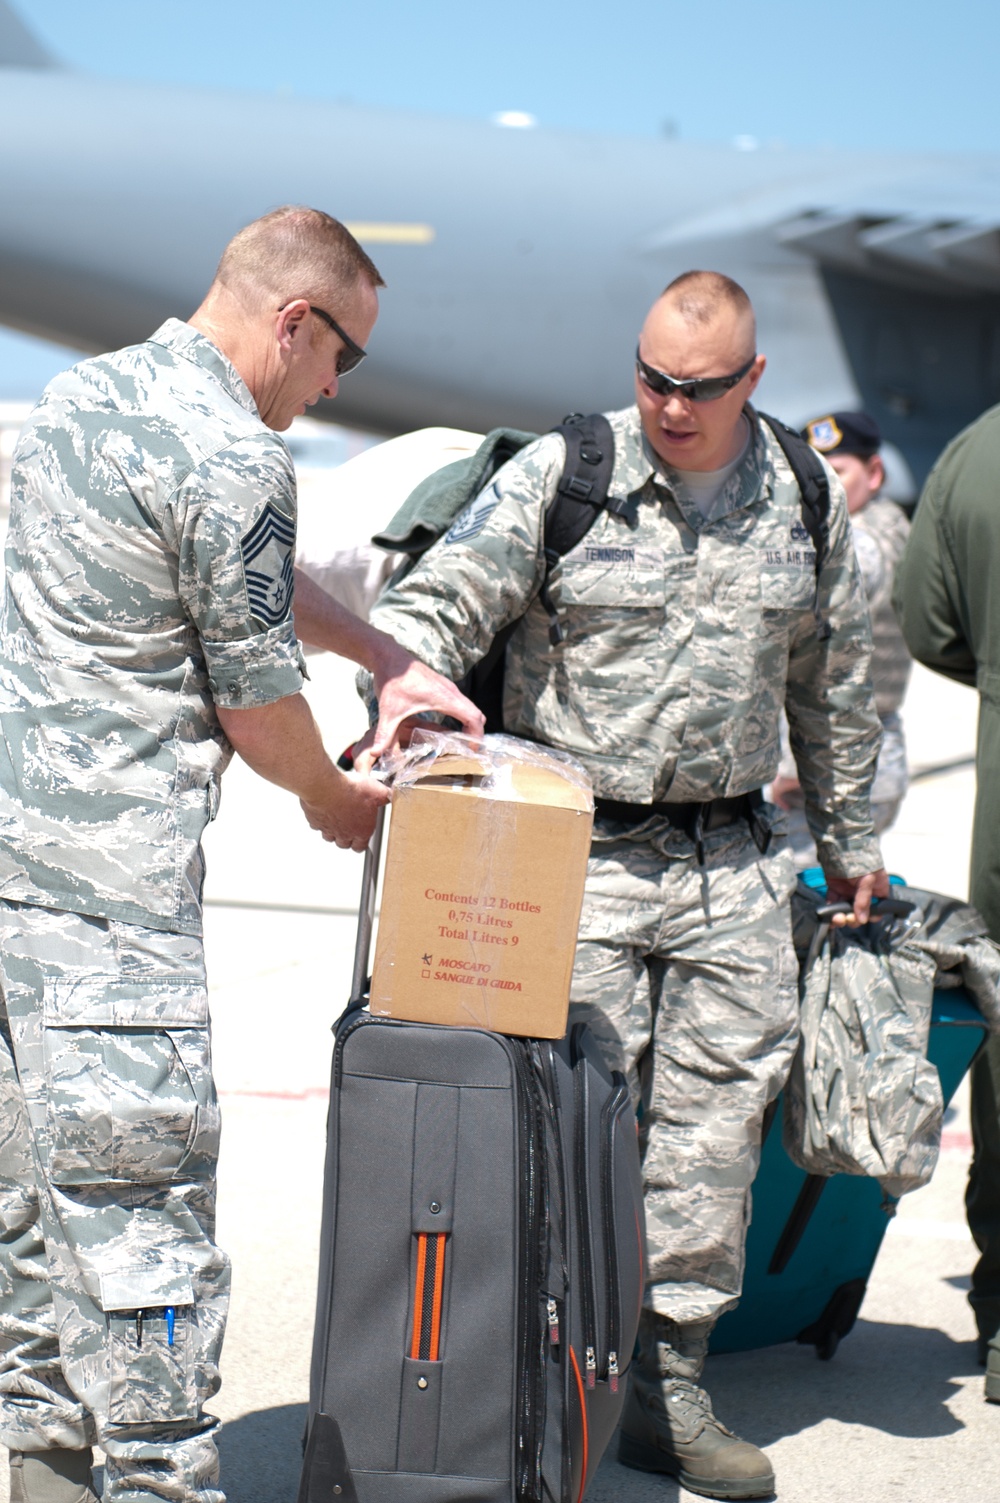 Airmen return home